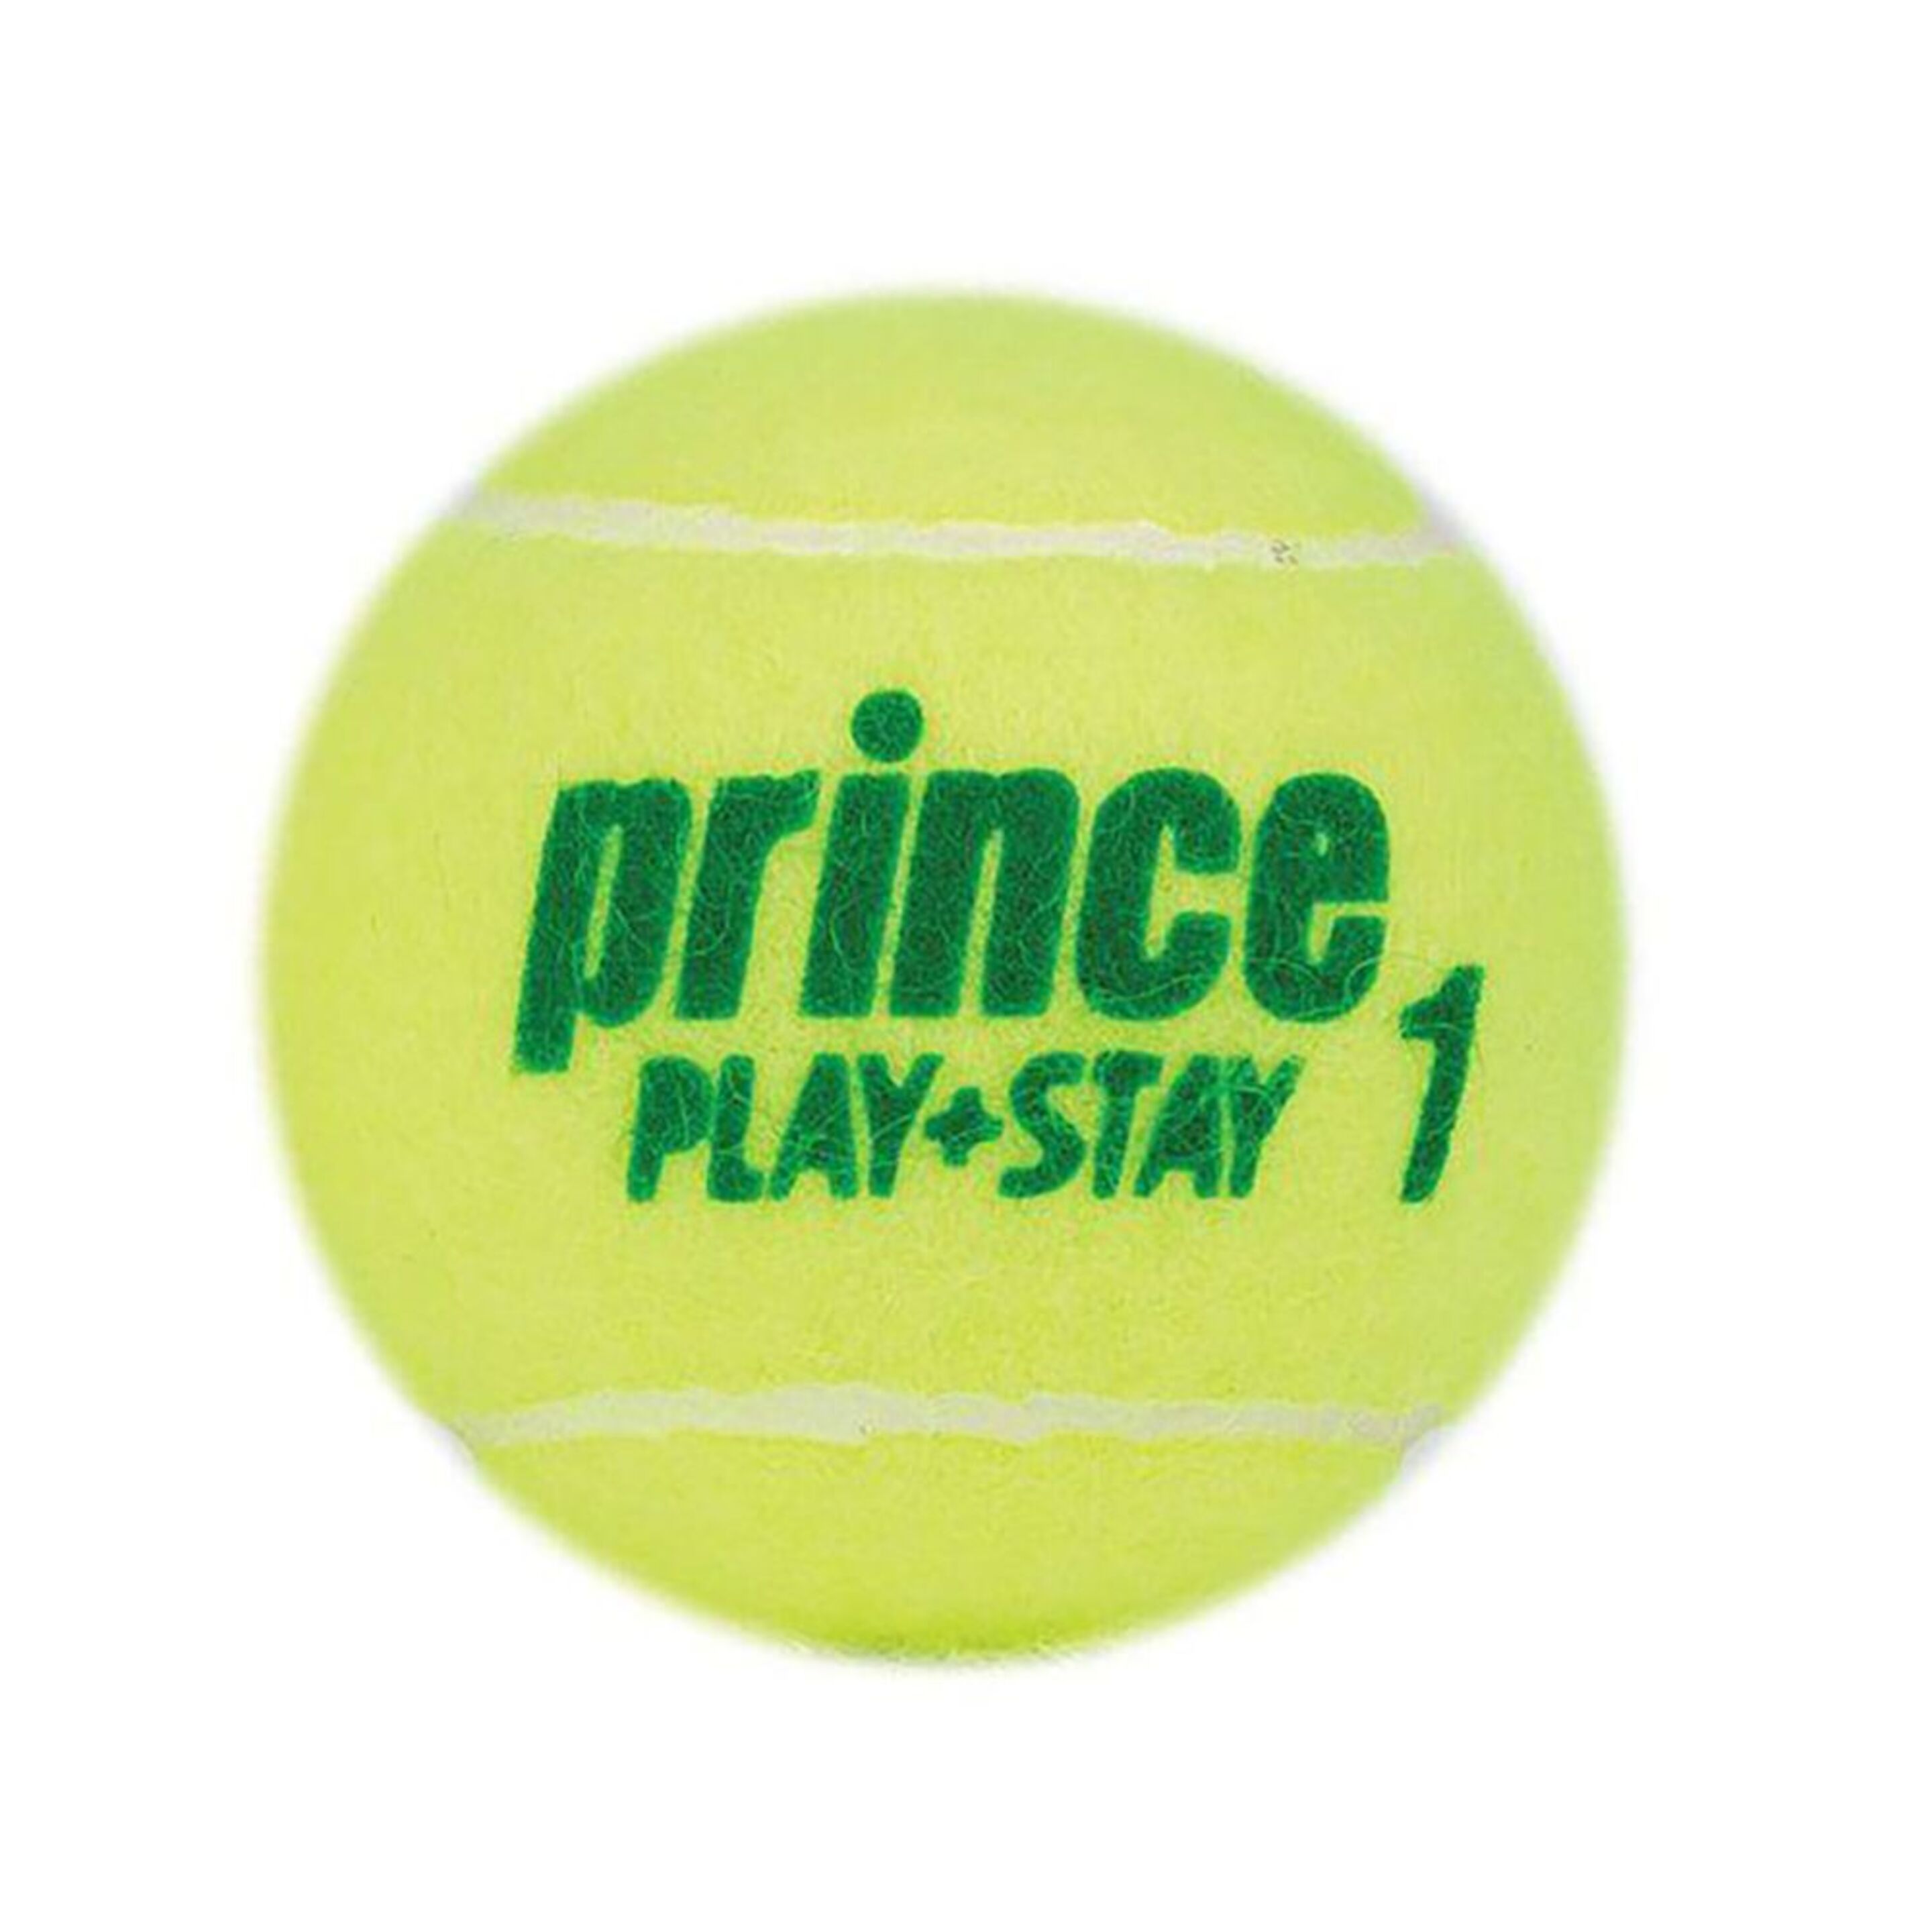 Caixa Com 24 Latas De 3 Bolas De Padel Prince Play & Stay Stage 1 - amarillo - 